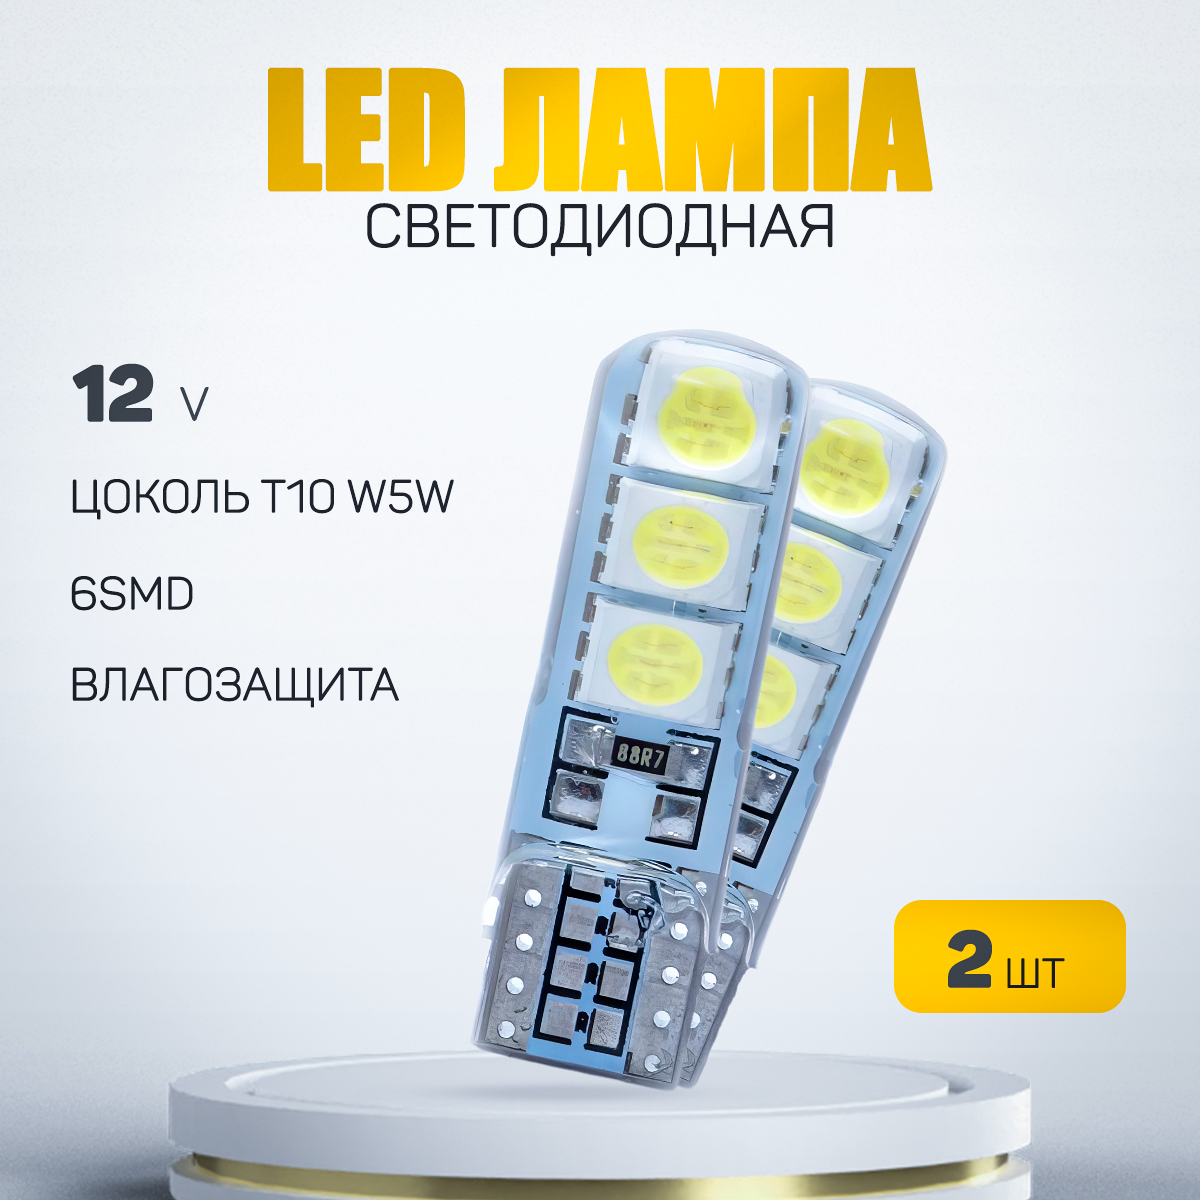 Автомобильная светодиодная лампа W5W-T10-6smd силиконовая LED для подсветки салона багажника и номерного знака (12V) 2 шт